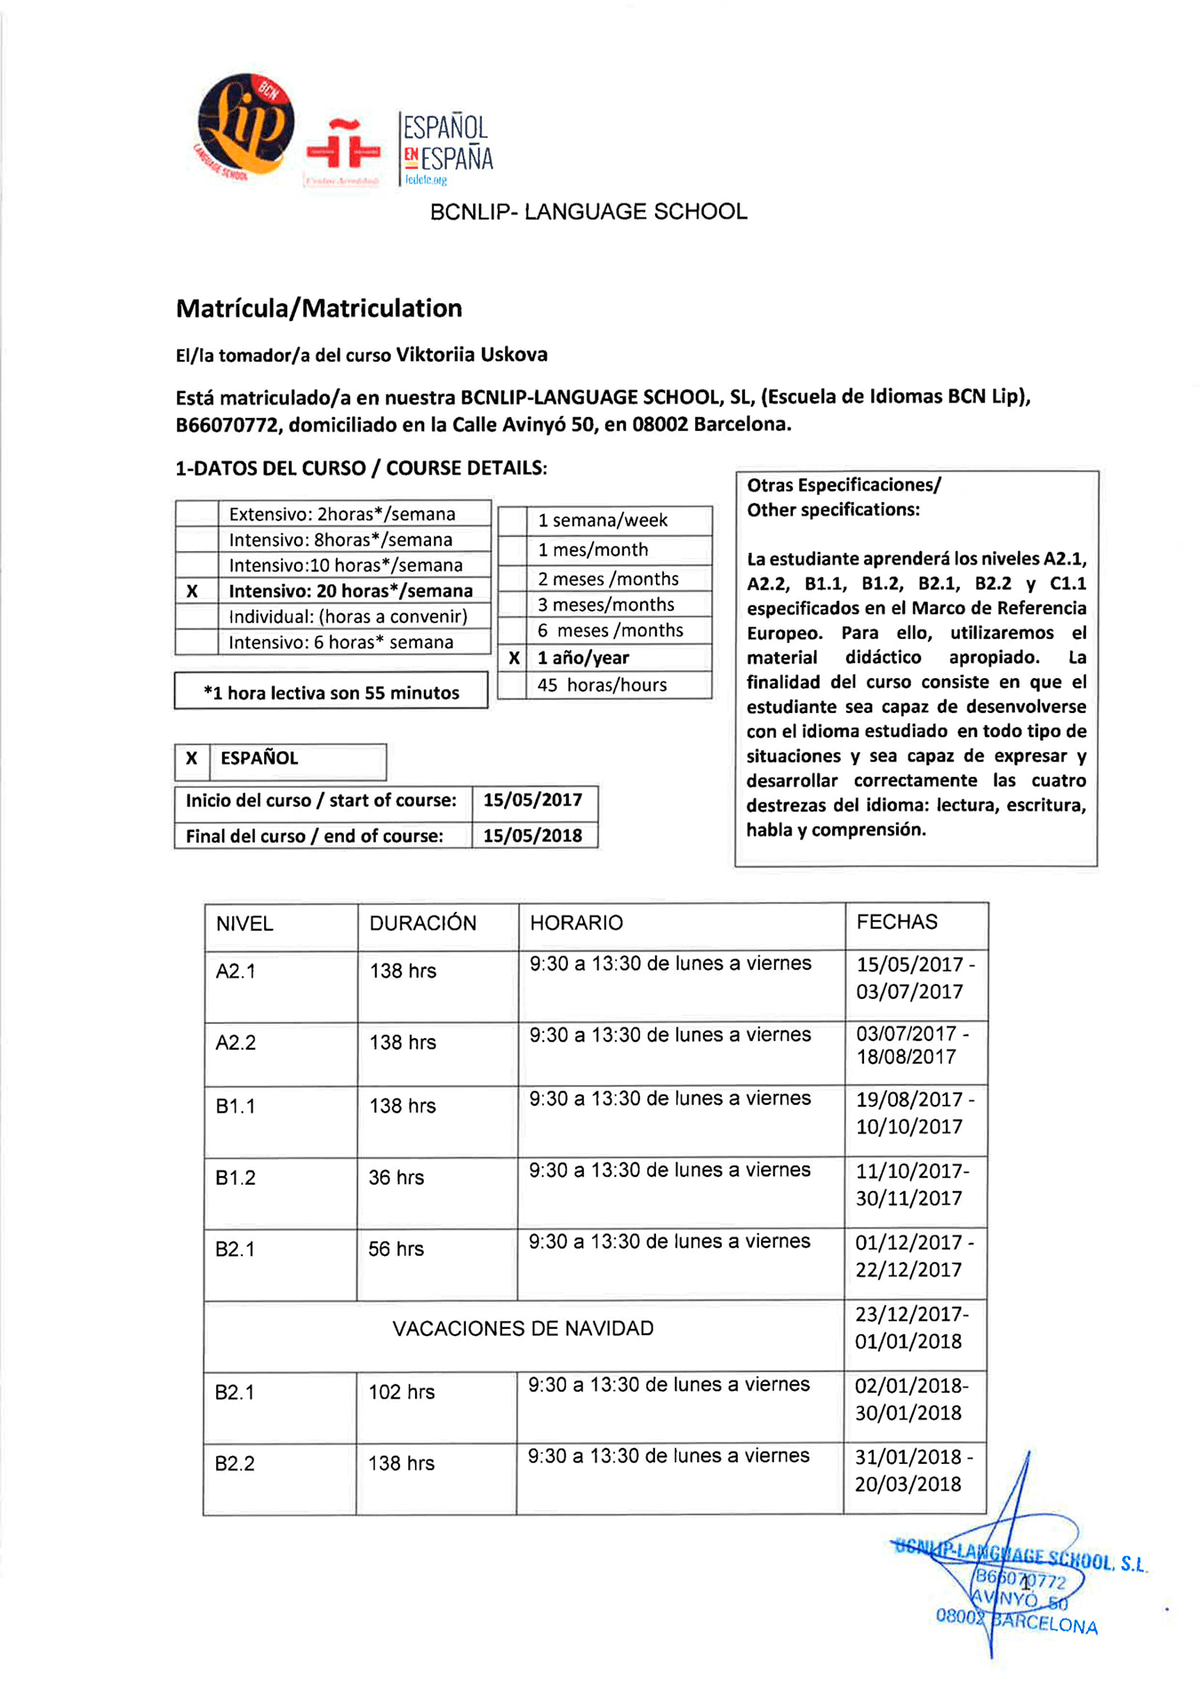 Первая страница матрикулы, где указаны сроки, даты и программа обучения по уровням языка